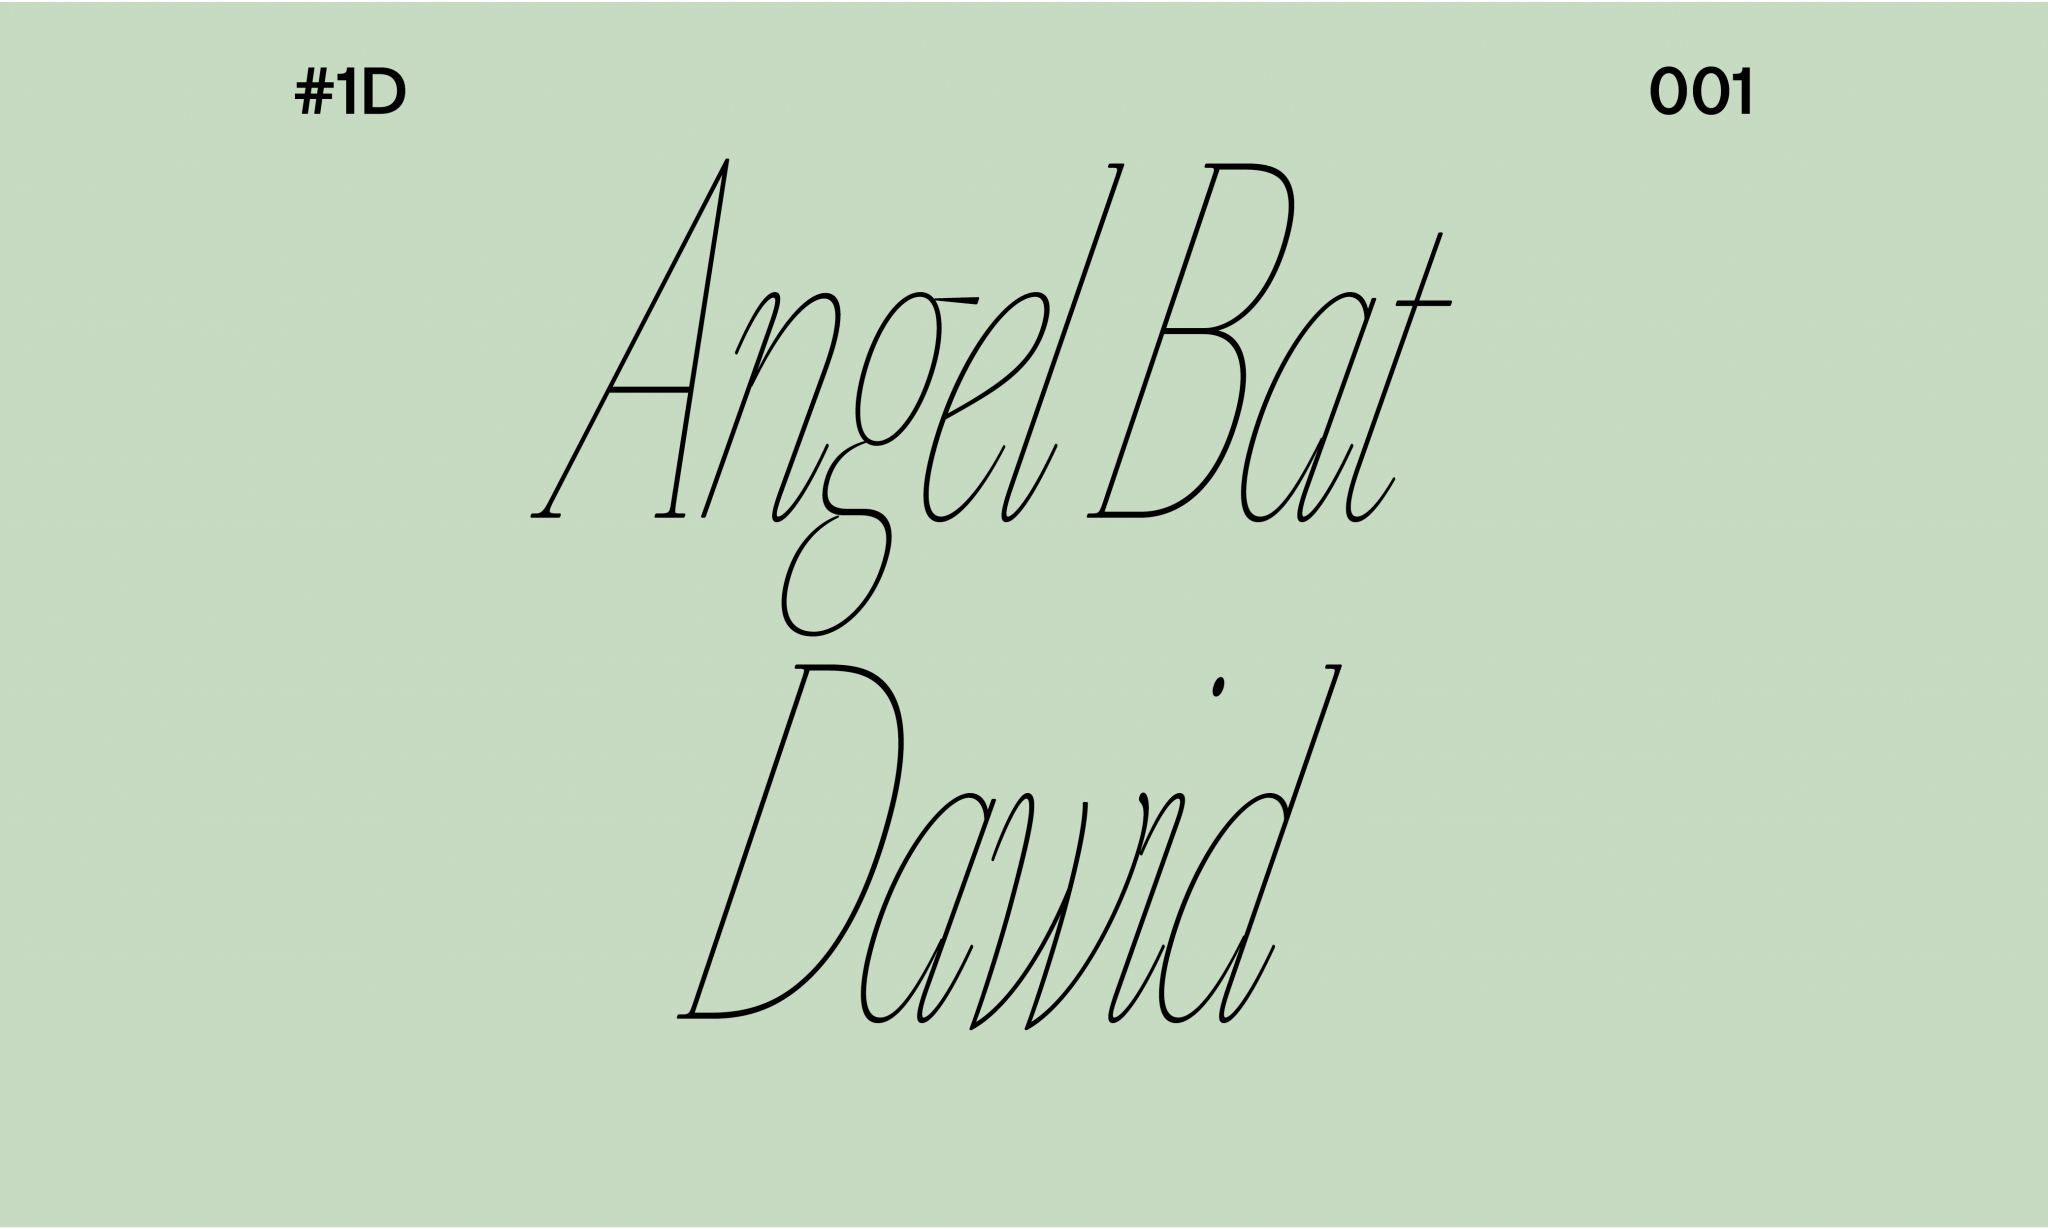 Angel Bat Dawid